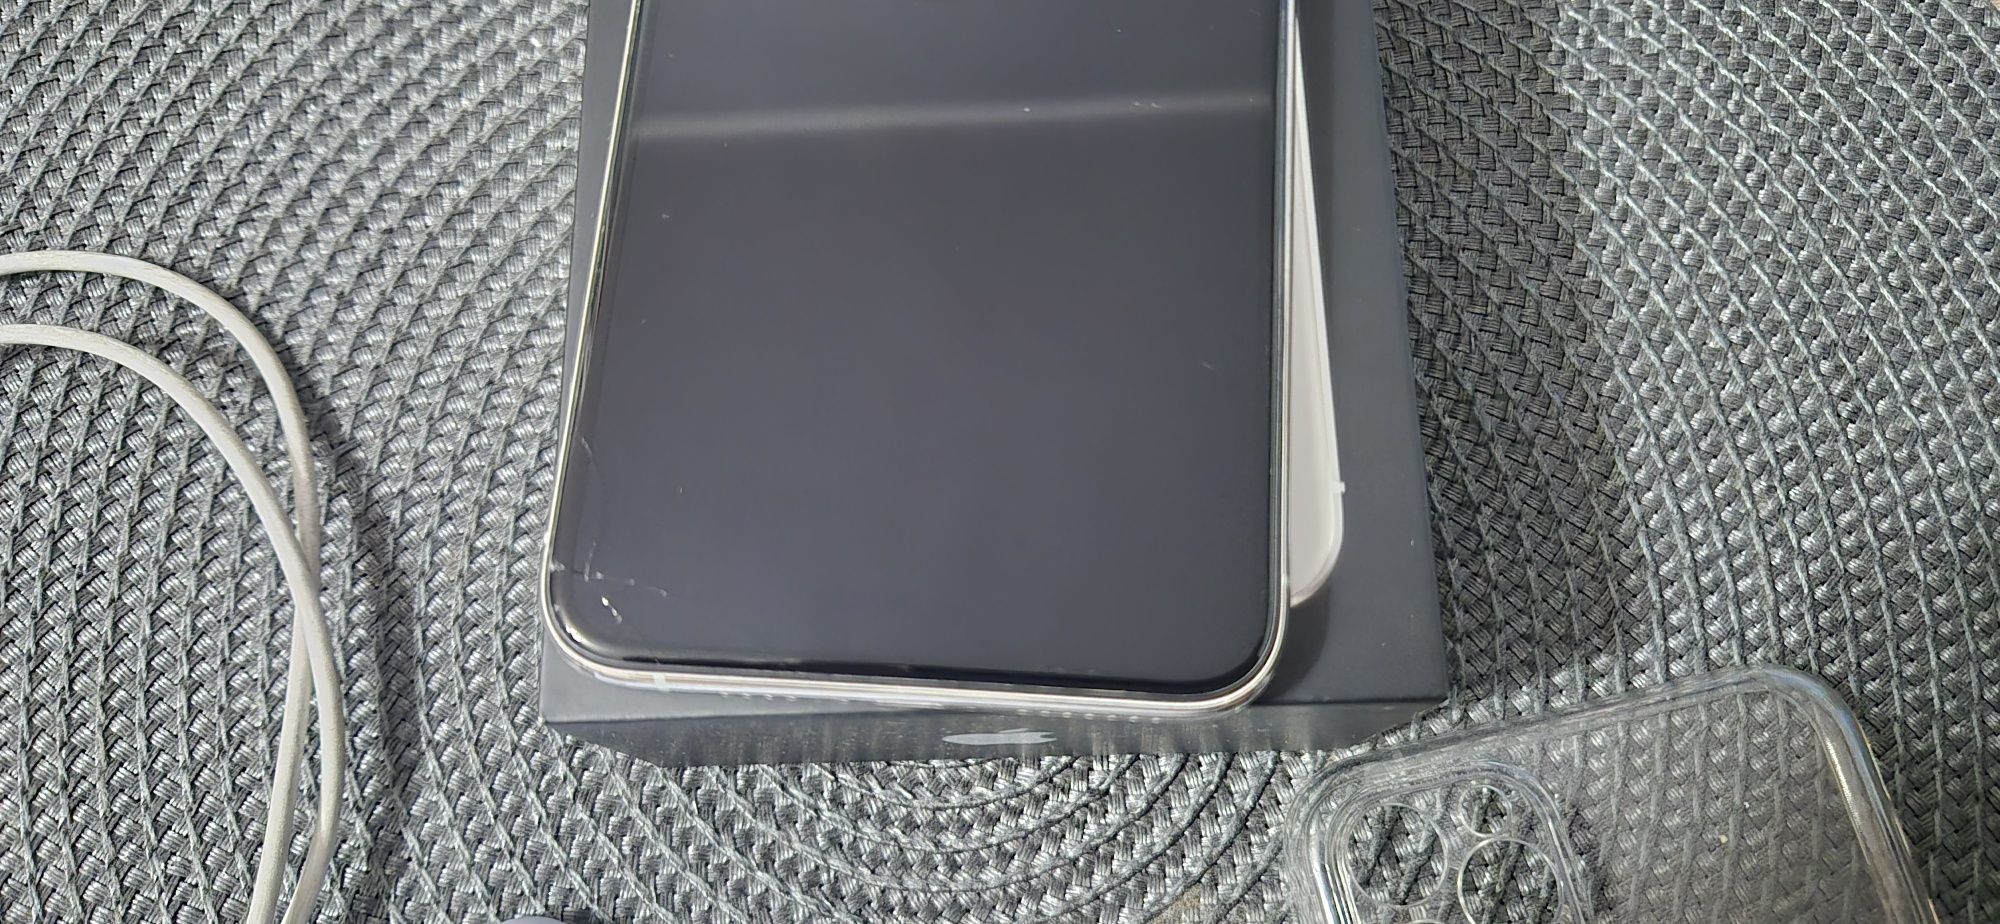 Iphone 11 Pro Max Biały/ White. Kupiony w iSpot